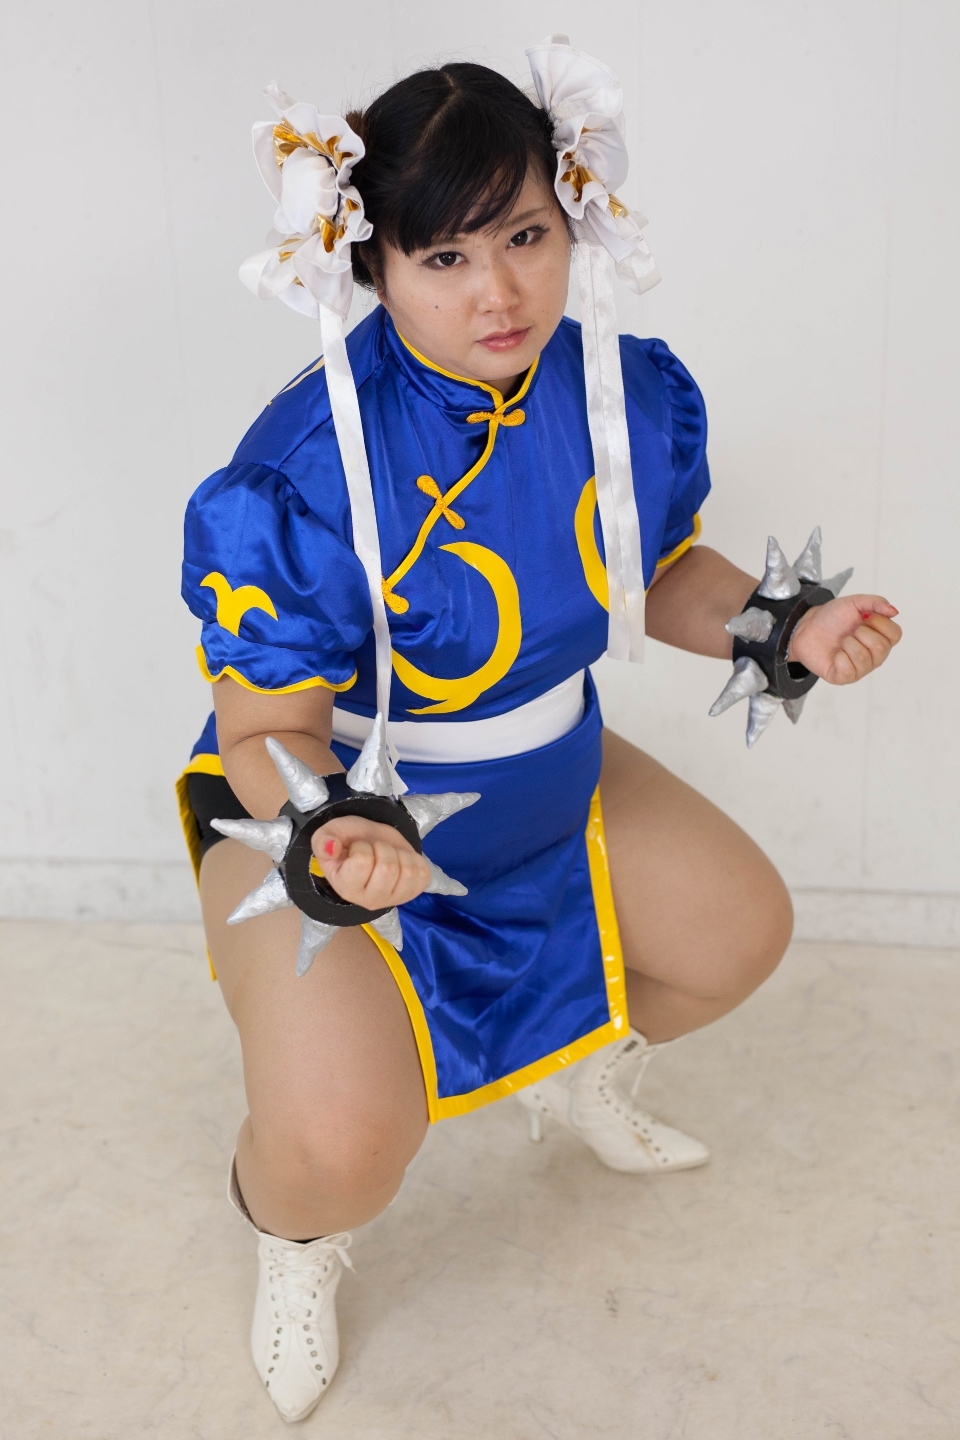 (渡辺さくらん) FIGHT FAT LADY (Sakuran Watanabe) (Mai Shiranui - Fatal Fury) (Chun-Li - Street Fighter) 101